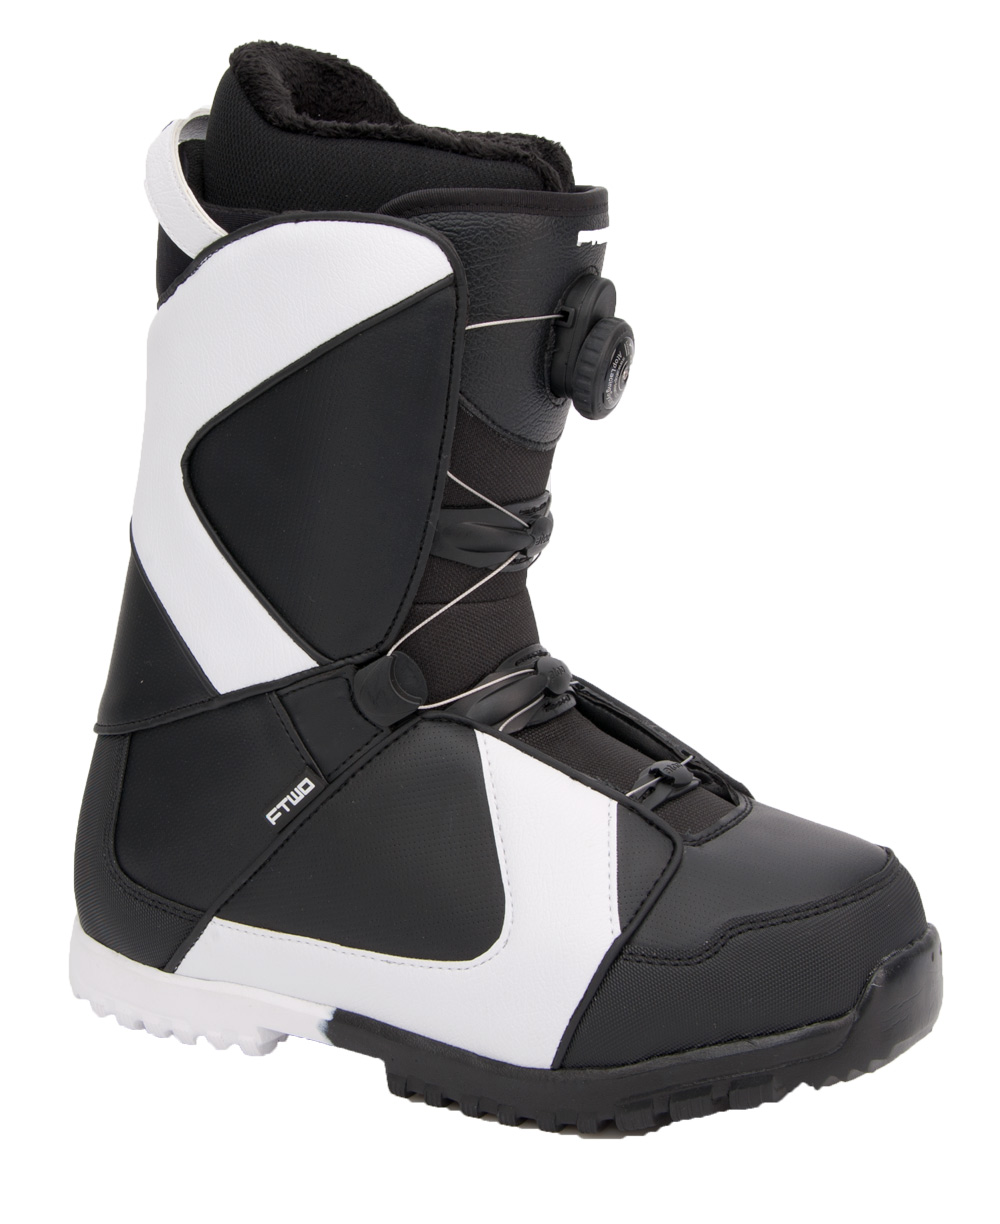 Ботинки сноубордические F2 Air размер 29,5 black/black  фото 